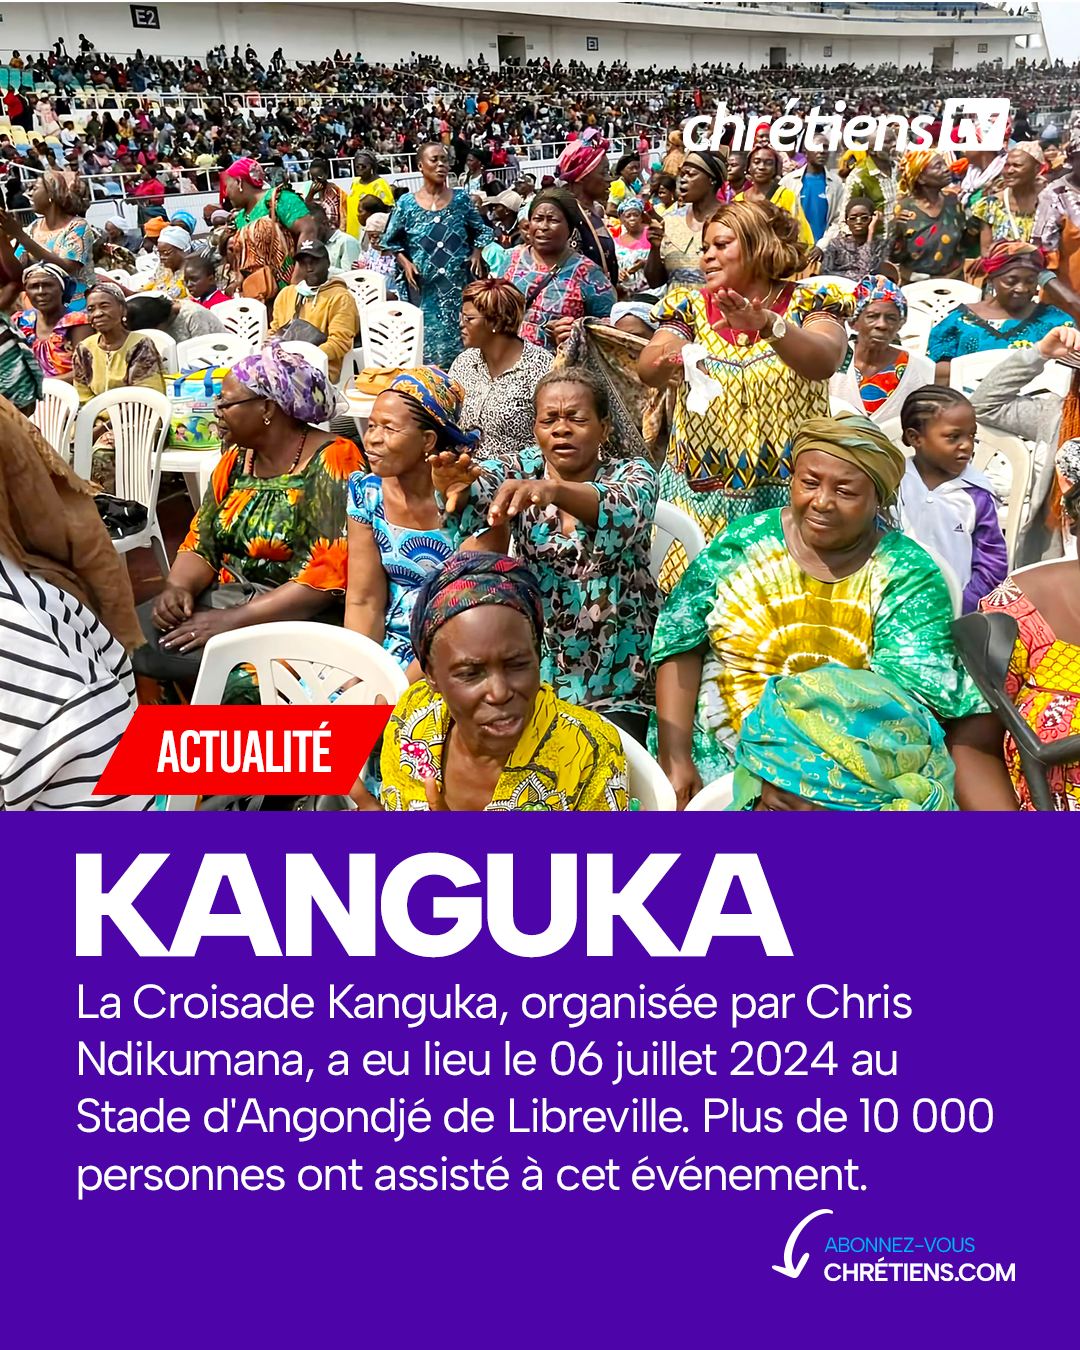 L’évangéliste burundais Chris Ndikumana, très connu sur les réseaux sociaux pour son émission Kanguka, a réuni des milliers de personnes dans le stade de l’Amitié de Libreville (Gabon) pour une croisade de prière le samedi 6 juillet 2024.